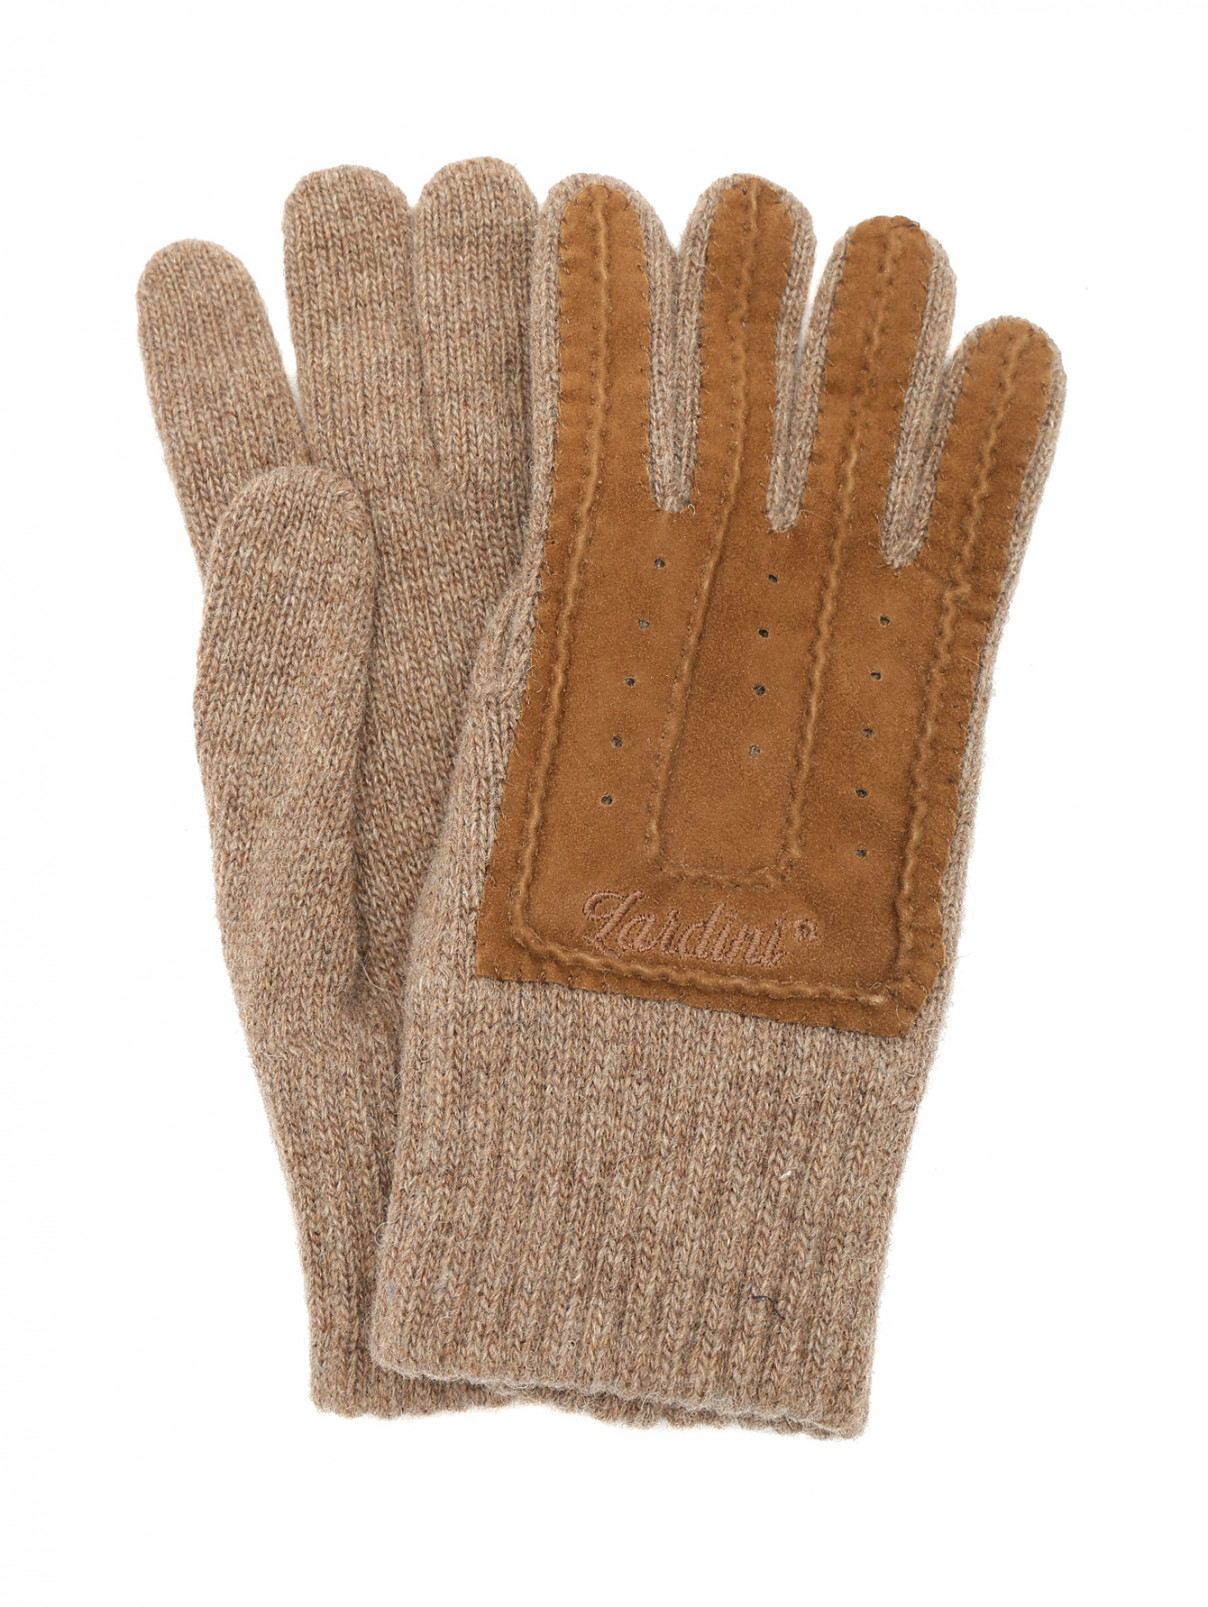 Перчатки из шерсти и кожи LARDINI  –  Общий вид  – Цвет:  Коричневый